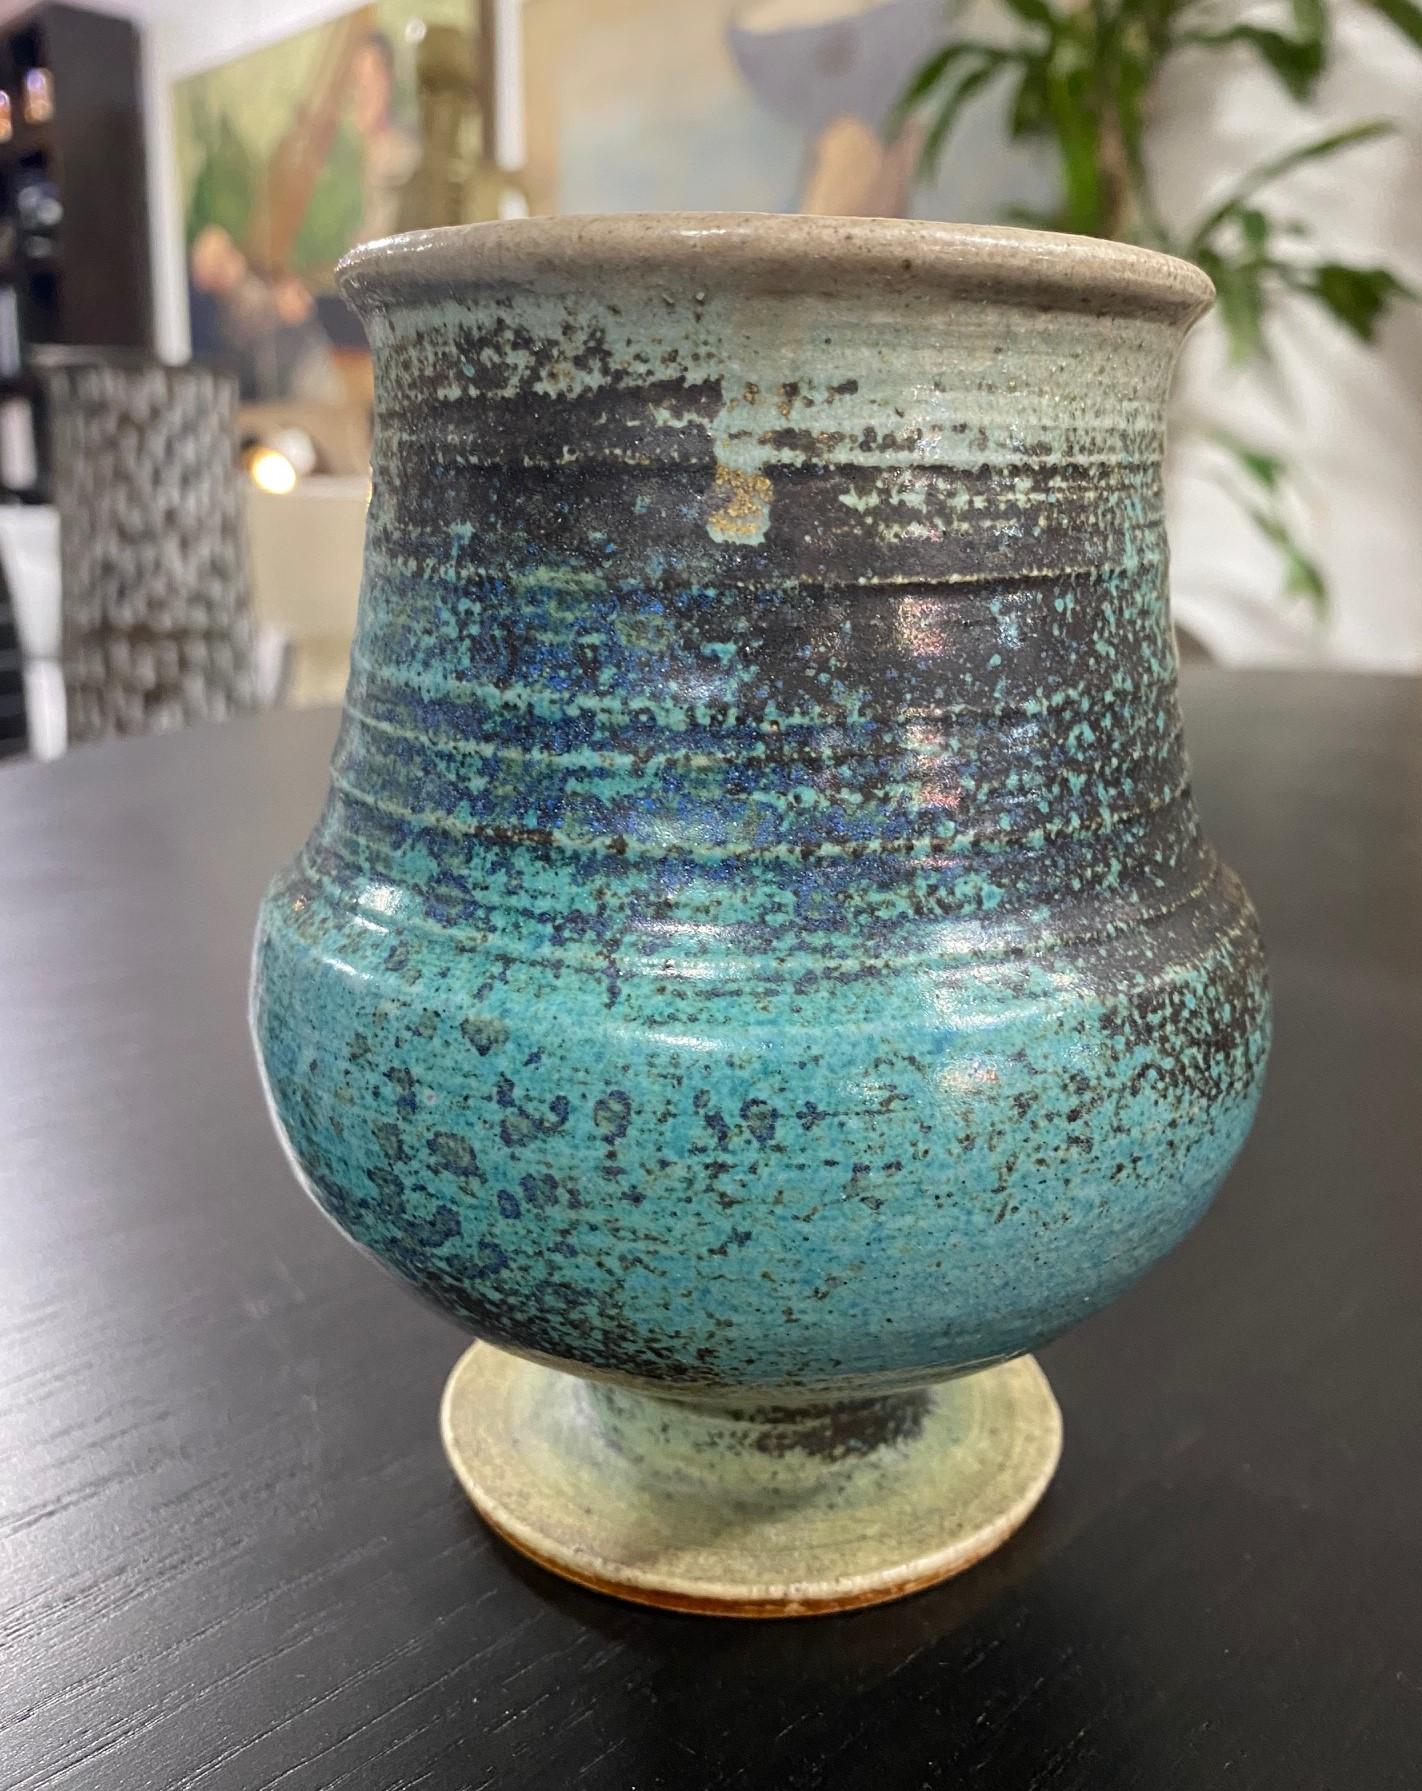 Eine wunderbare skandinavische Vase aus glasiertem Steinzeug mit Fuß von Annikki Hovisaari für Arabia Finland. Dieses Stück hat eine meeresähnliche türkis-blaue Glasur und eine kürbisartige Form. 

Hovisaari begann seine Arbeit bei Arabia Finland